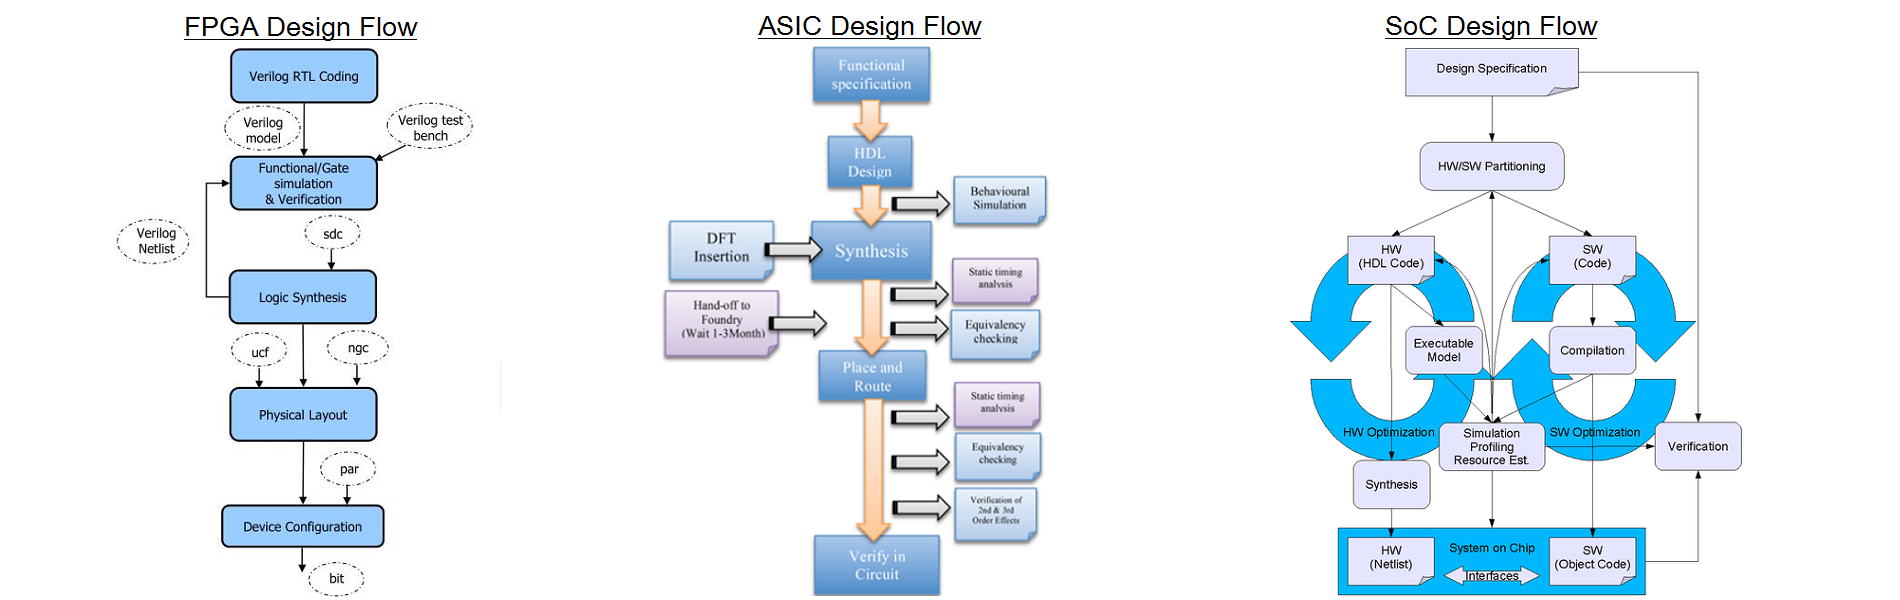 FPGA/ASIC/SoC Design Flow